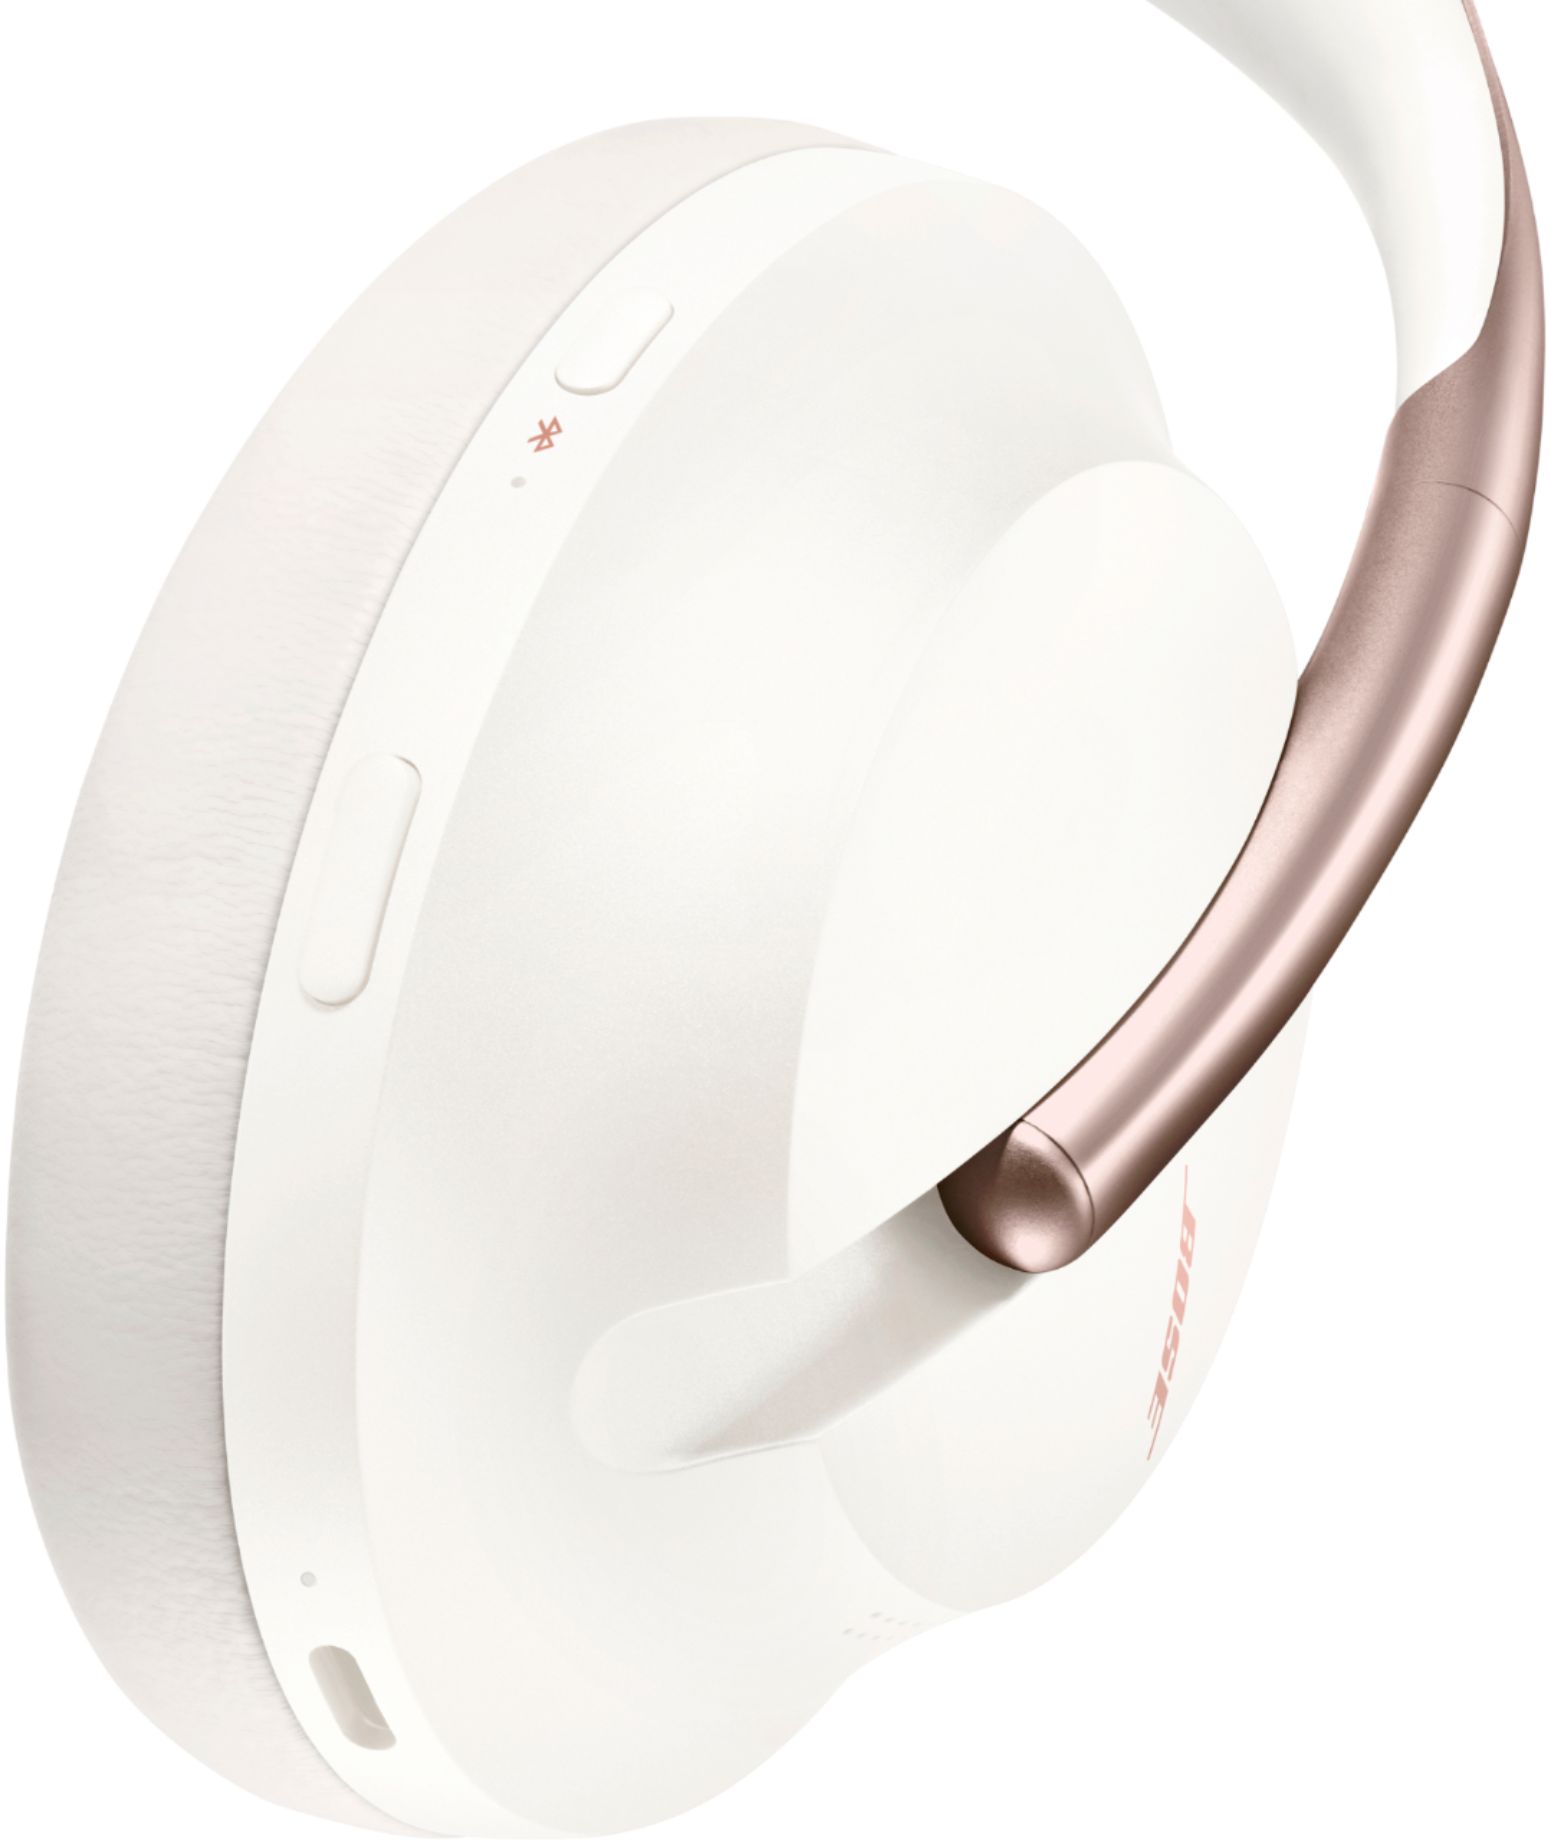 オーディオ機器 ヘッドフォン Best Buy: Bose Headphones 700 Wireless Noise Cancelling Over-the 